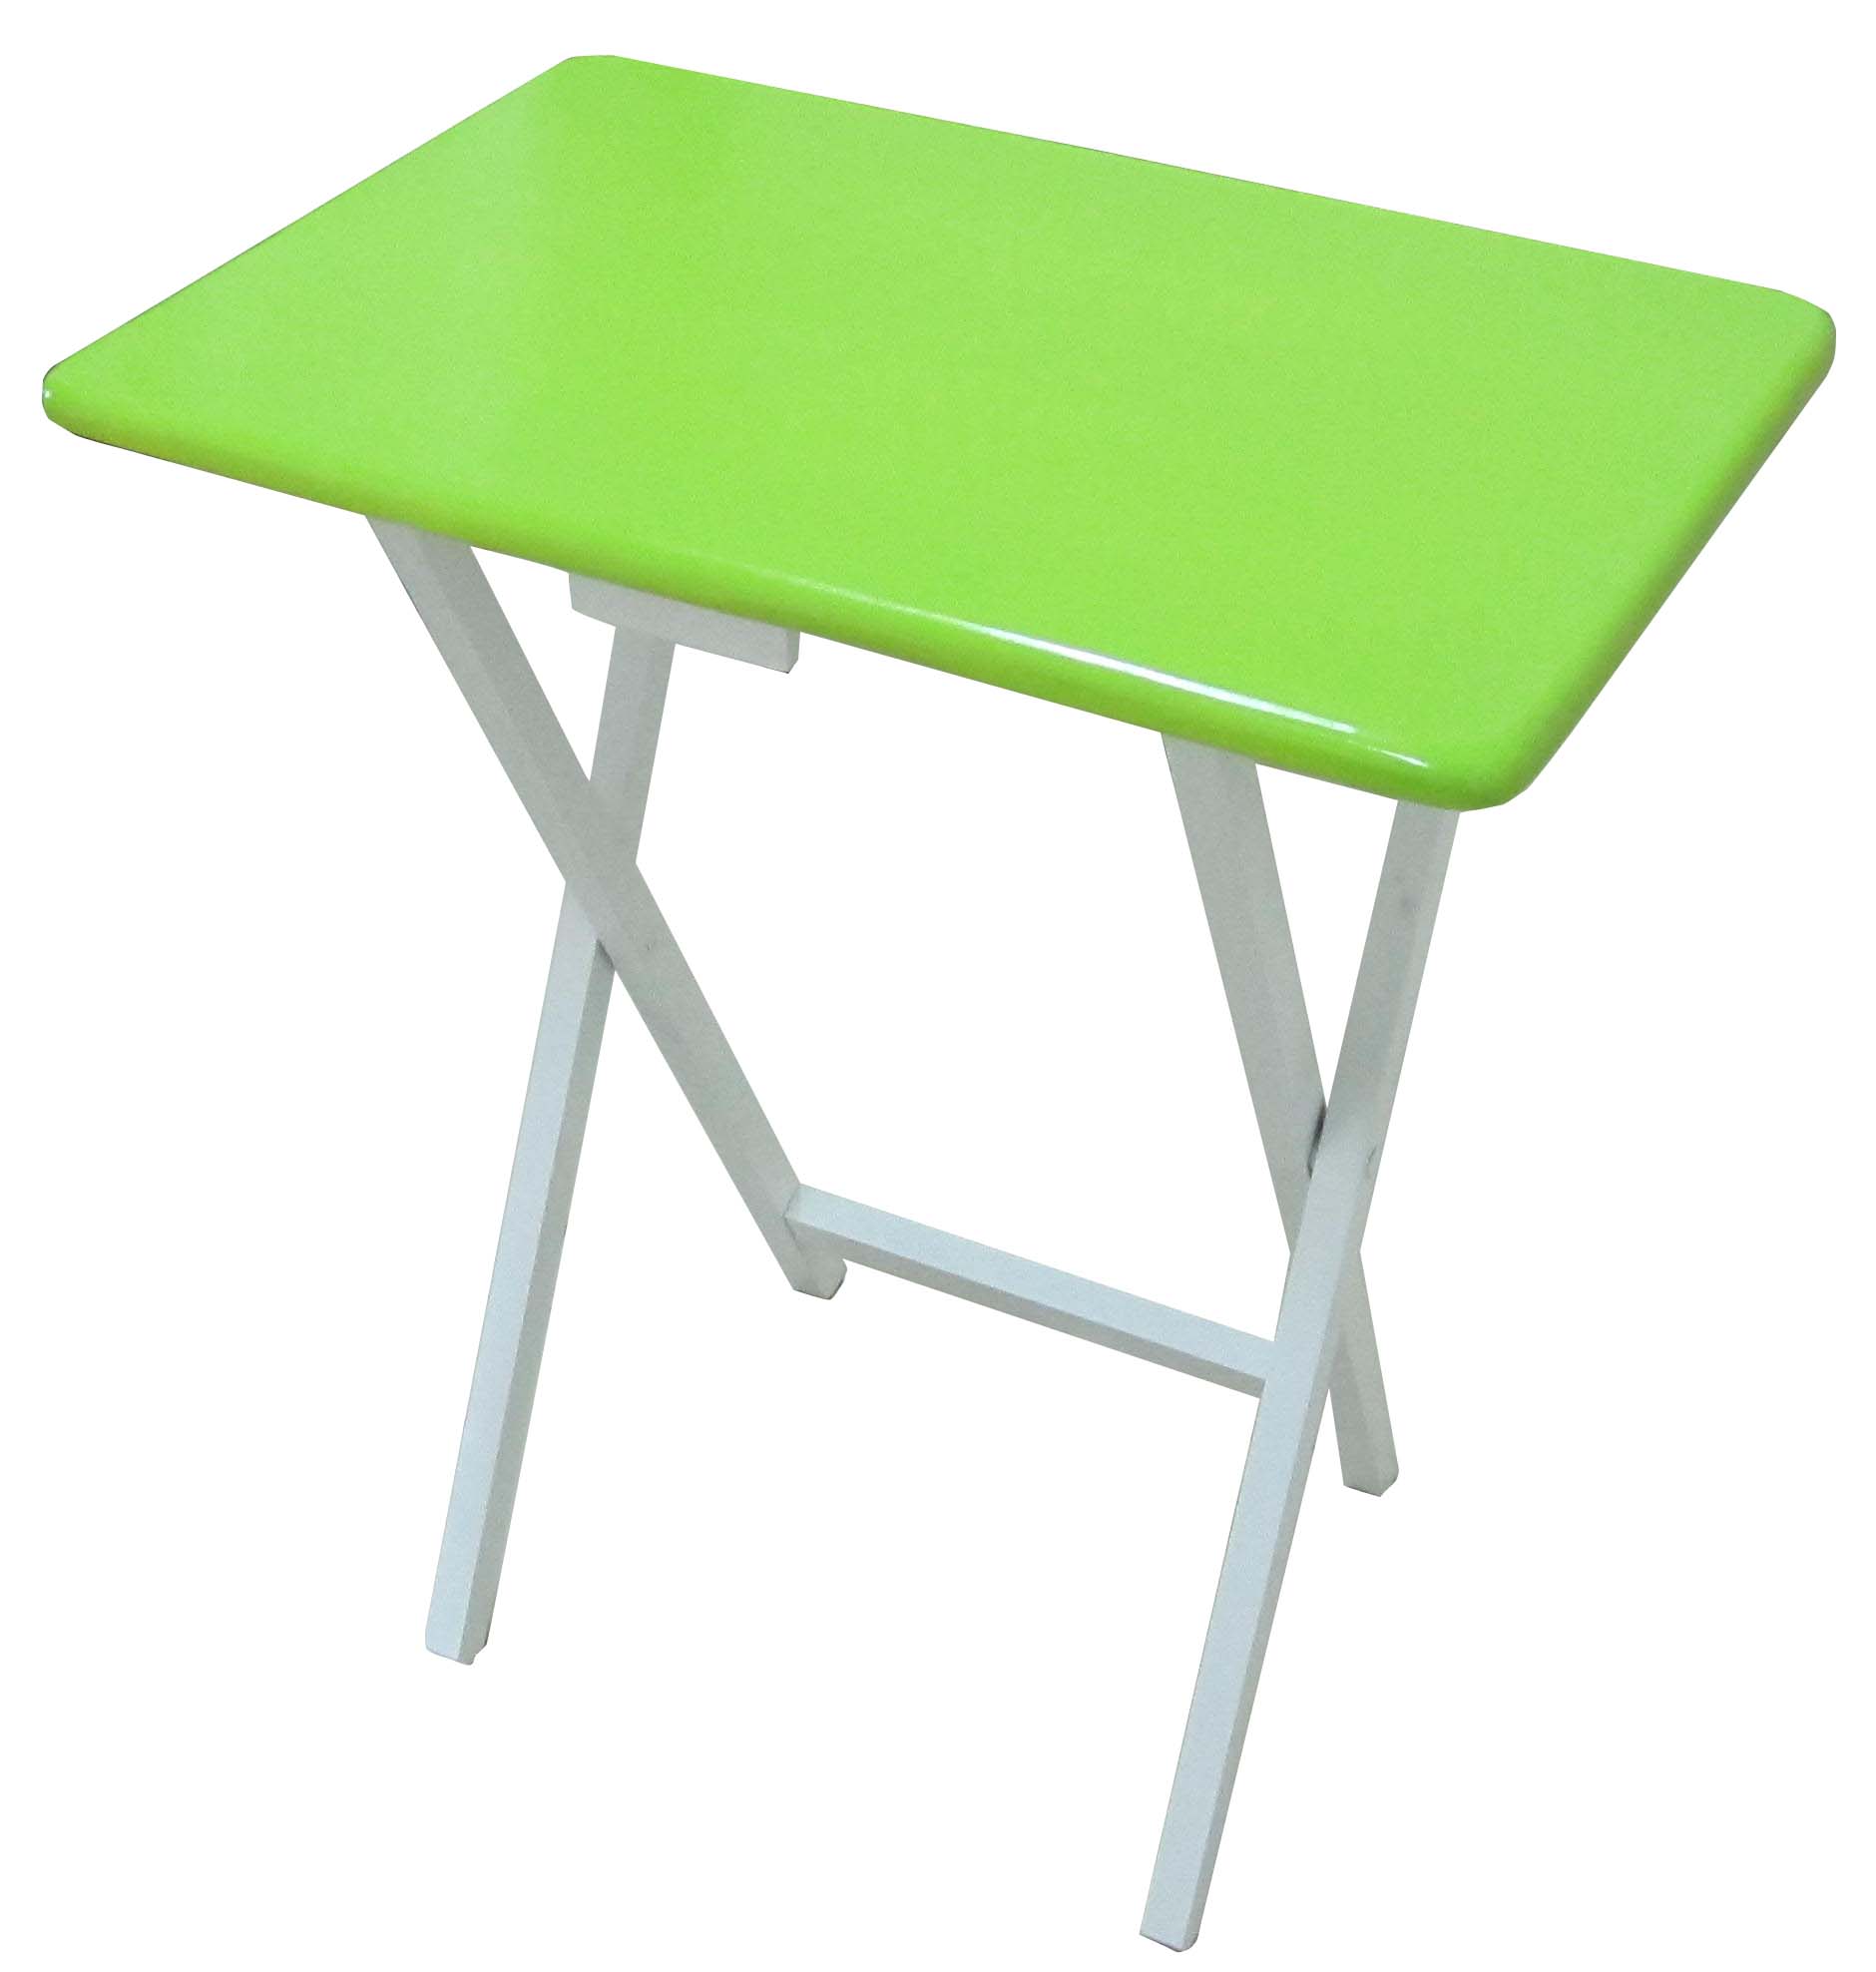 โต๊ะขาพับอเนกประสงค์ วางNoteBook โต๊ะทำเล็บ โต๊ะกินข้าวคนเดียว ฯลฯ มีหลายสีให้เลือก ผลิตจากไม้ยางพารา T.0849624525  รูปที่ 1